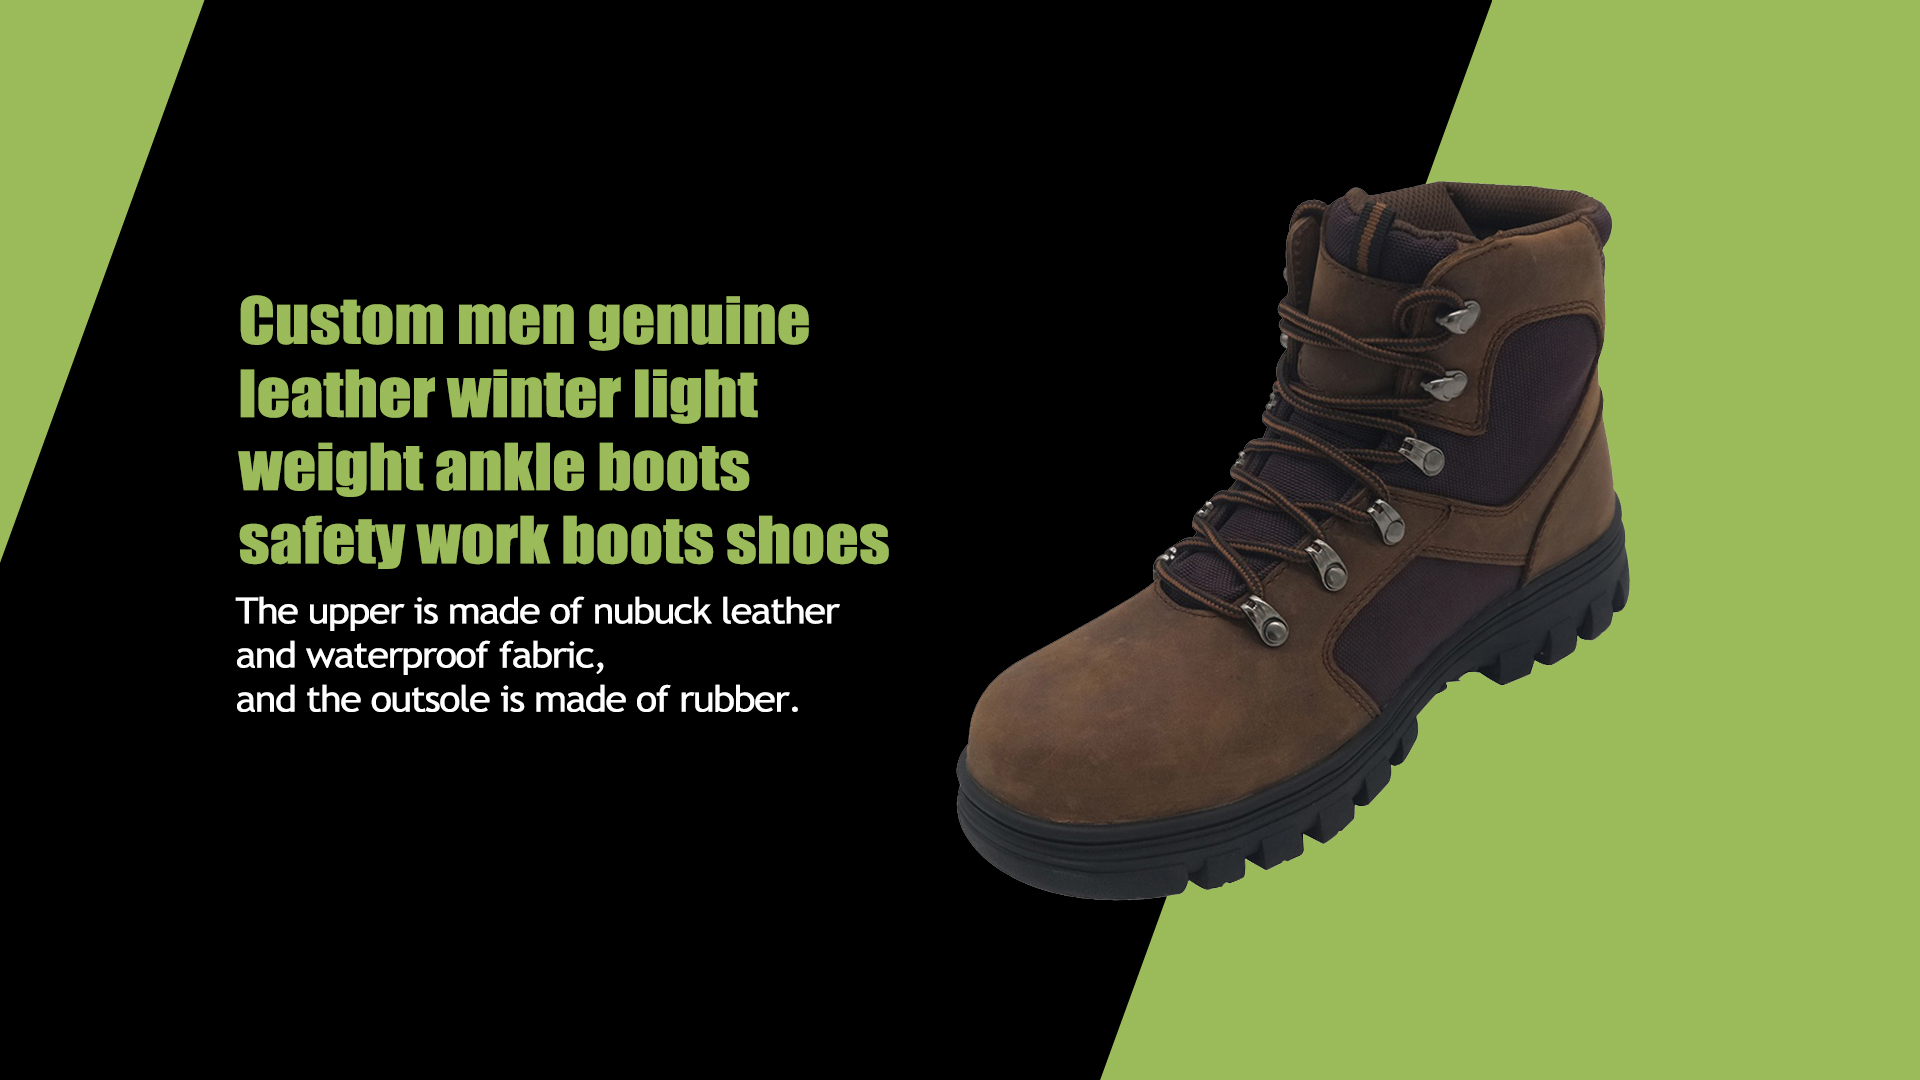 Botines de invierno de cuero genuino para hombre personalizados, botas de trabajo de seguridad, zapatos ligeros